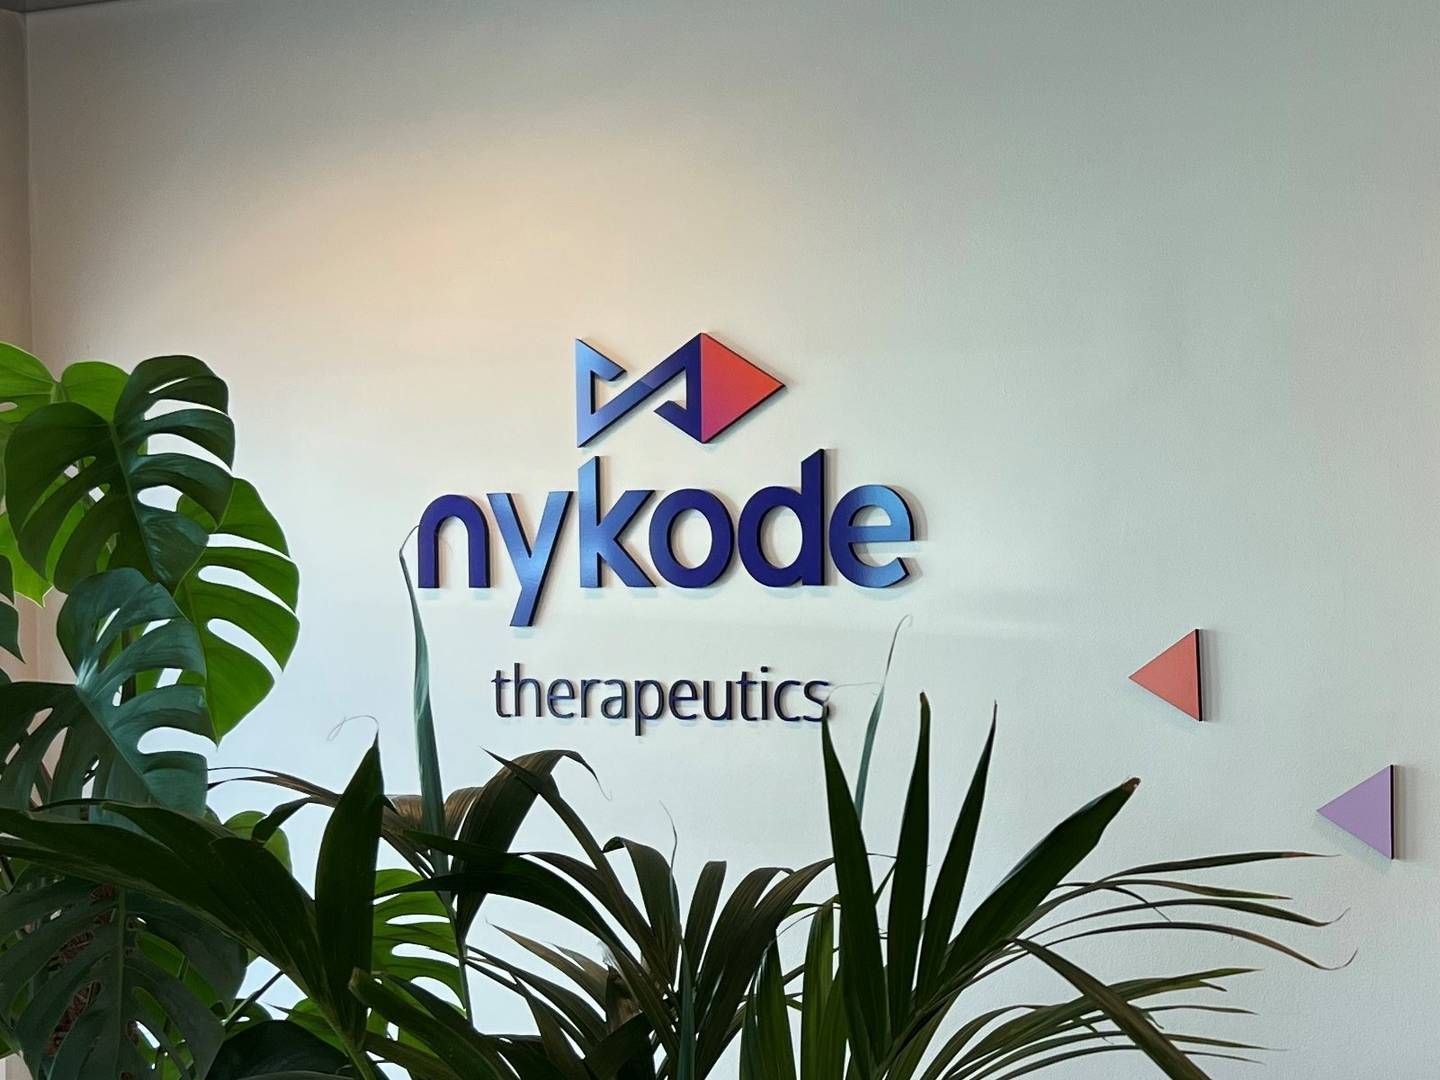 Nykode Therapeutics fastholder indtil videre sit hovedkvarter i Norge, selvom langt de fleste chefer bor og arbejder i Danmark. | Photo: Nykode/pr